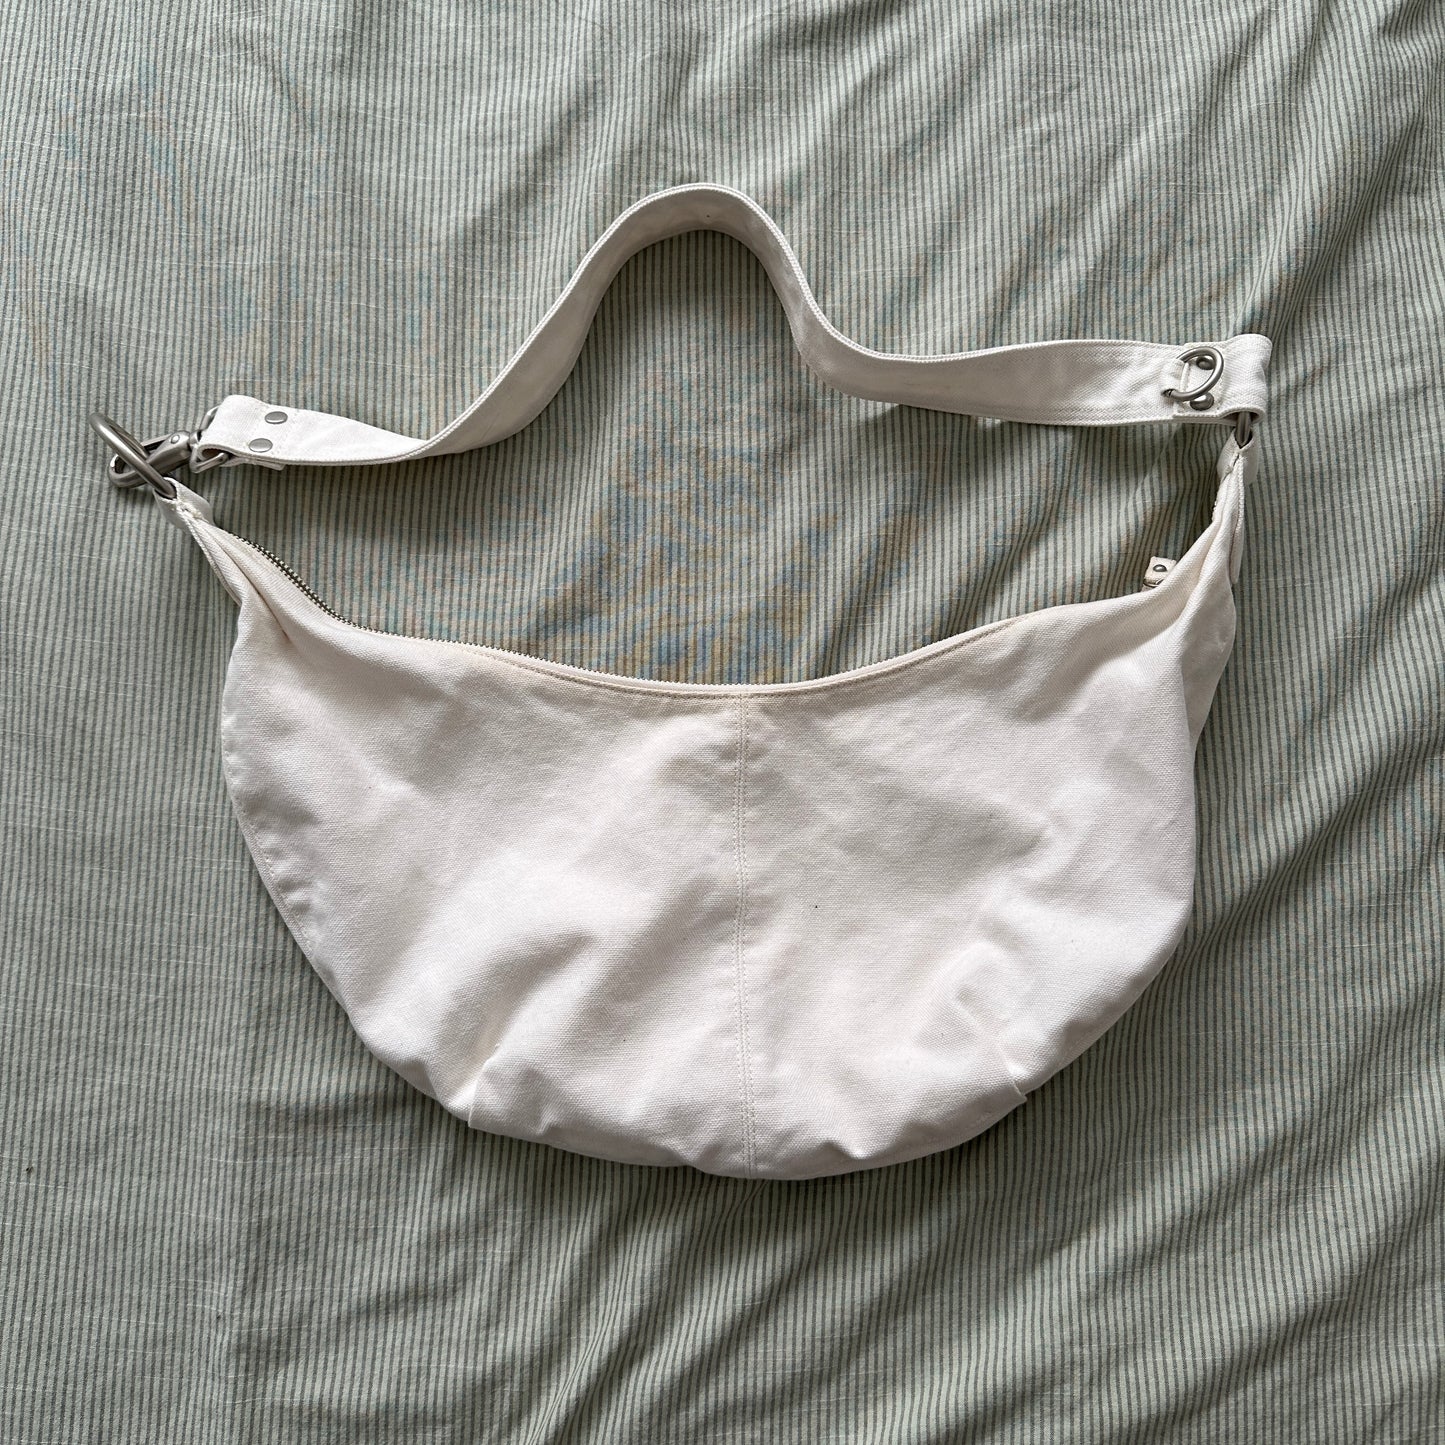 Vintage Gap white Shoulder bag